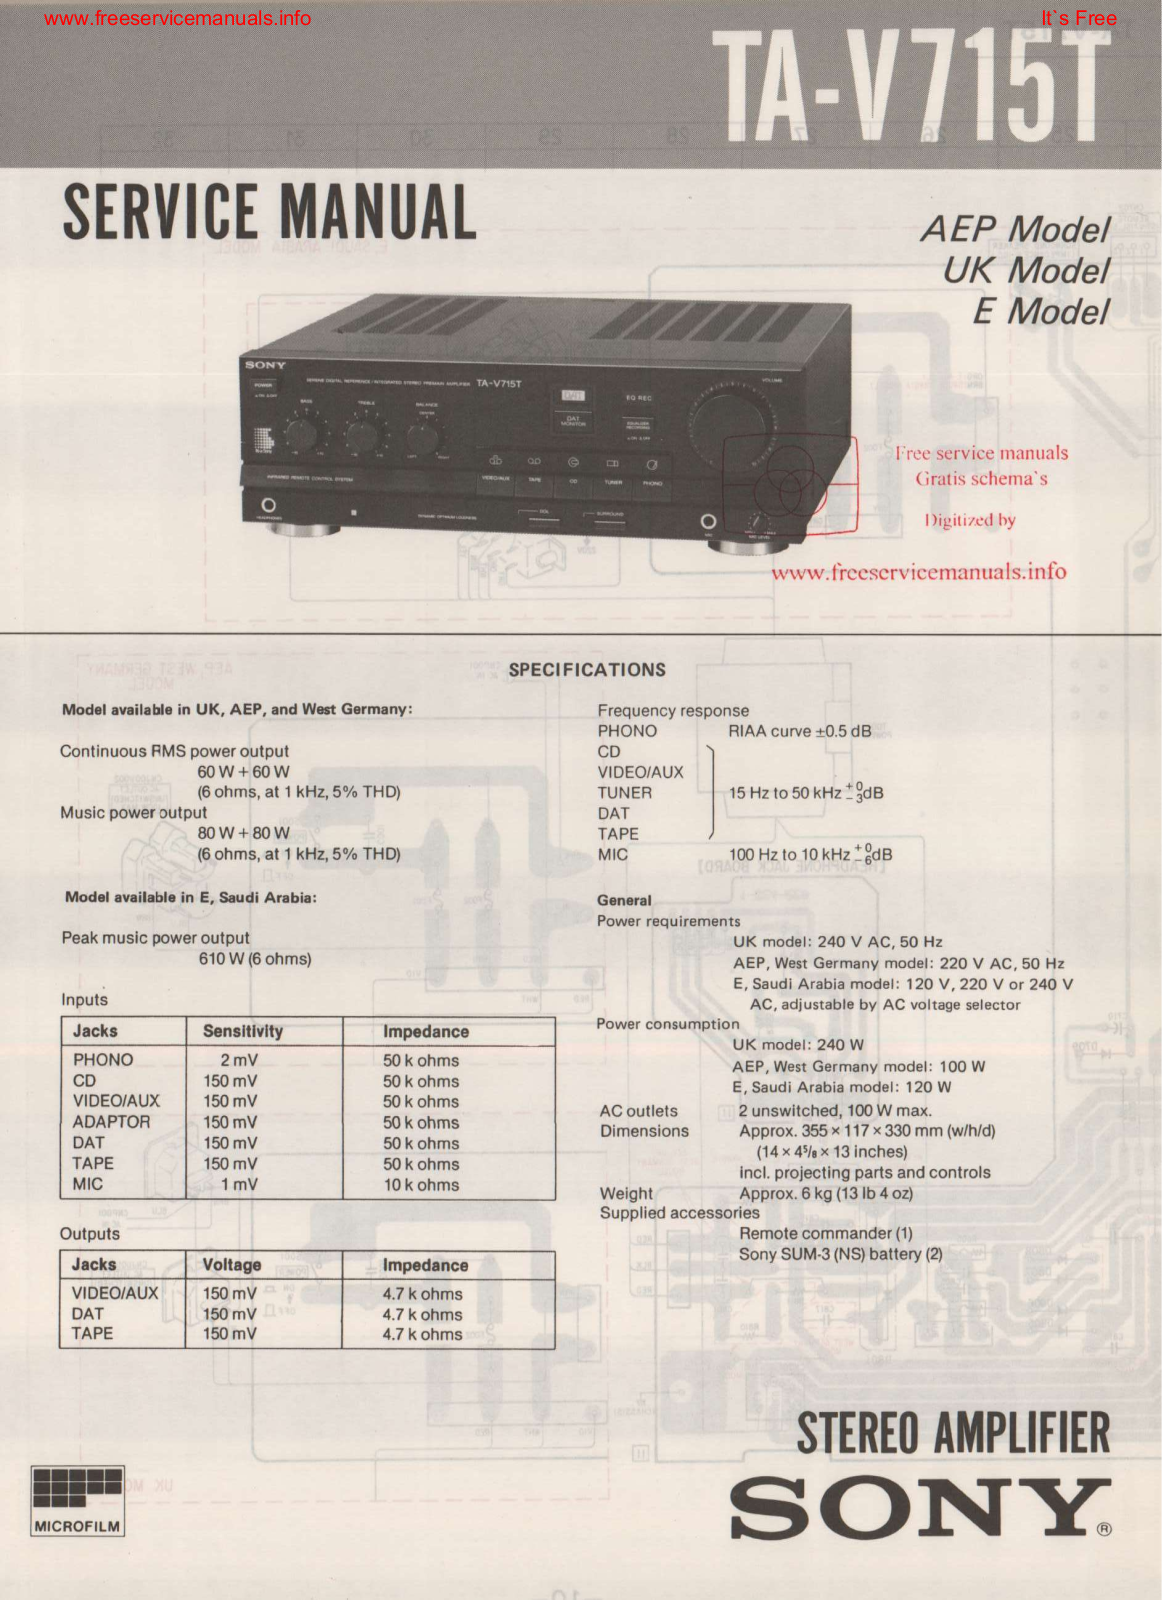 Sony TA-V715T Service Manual